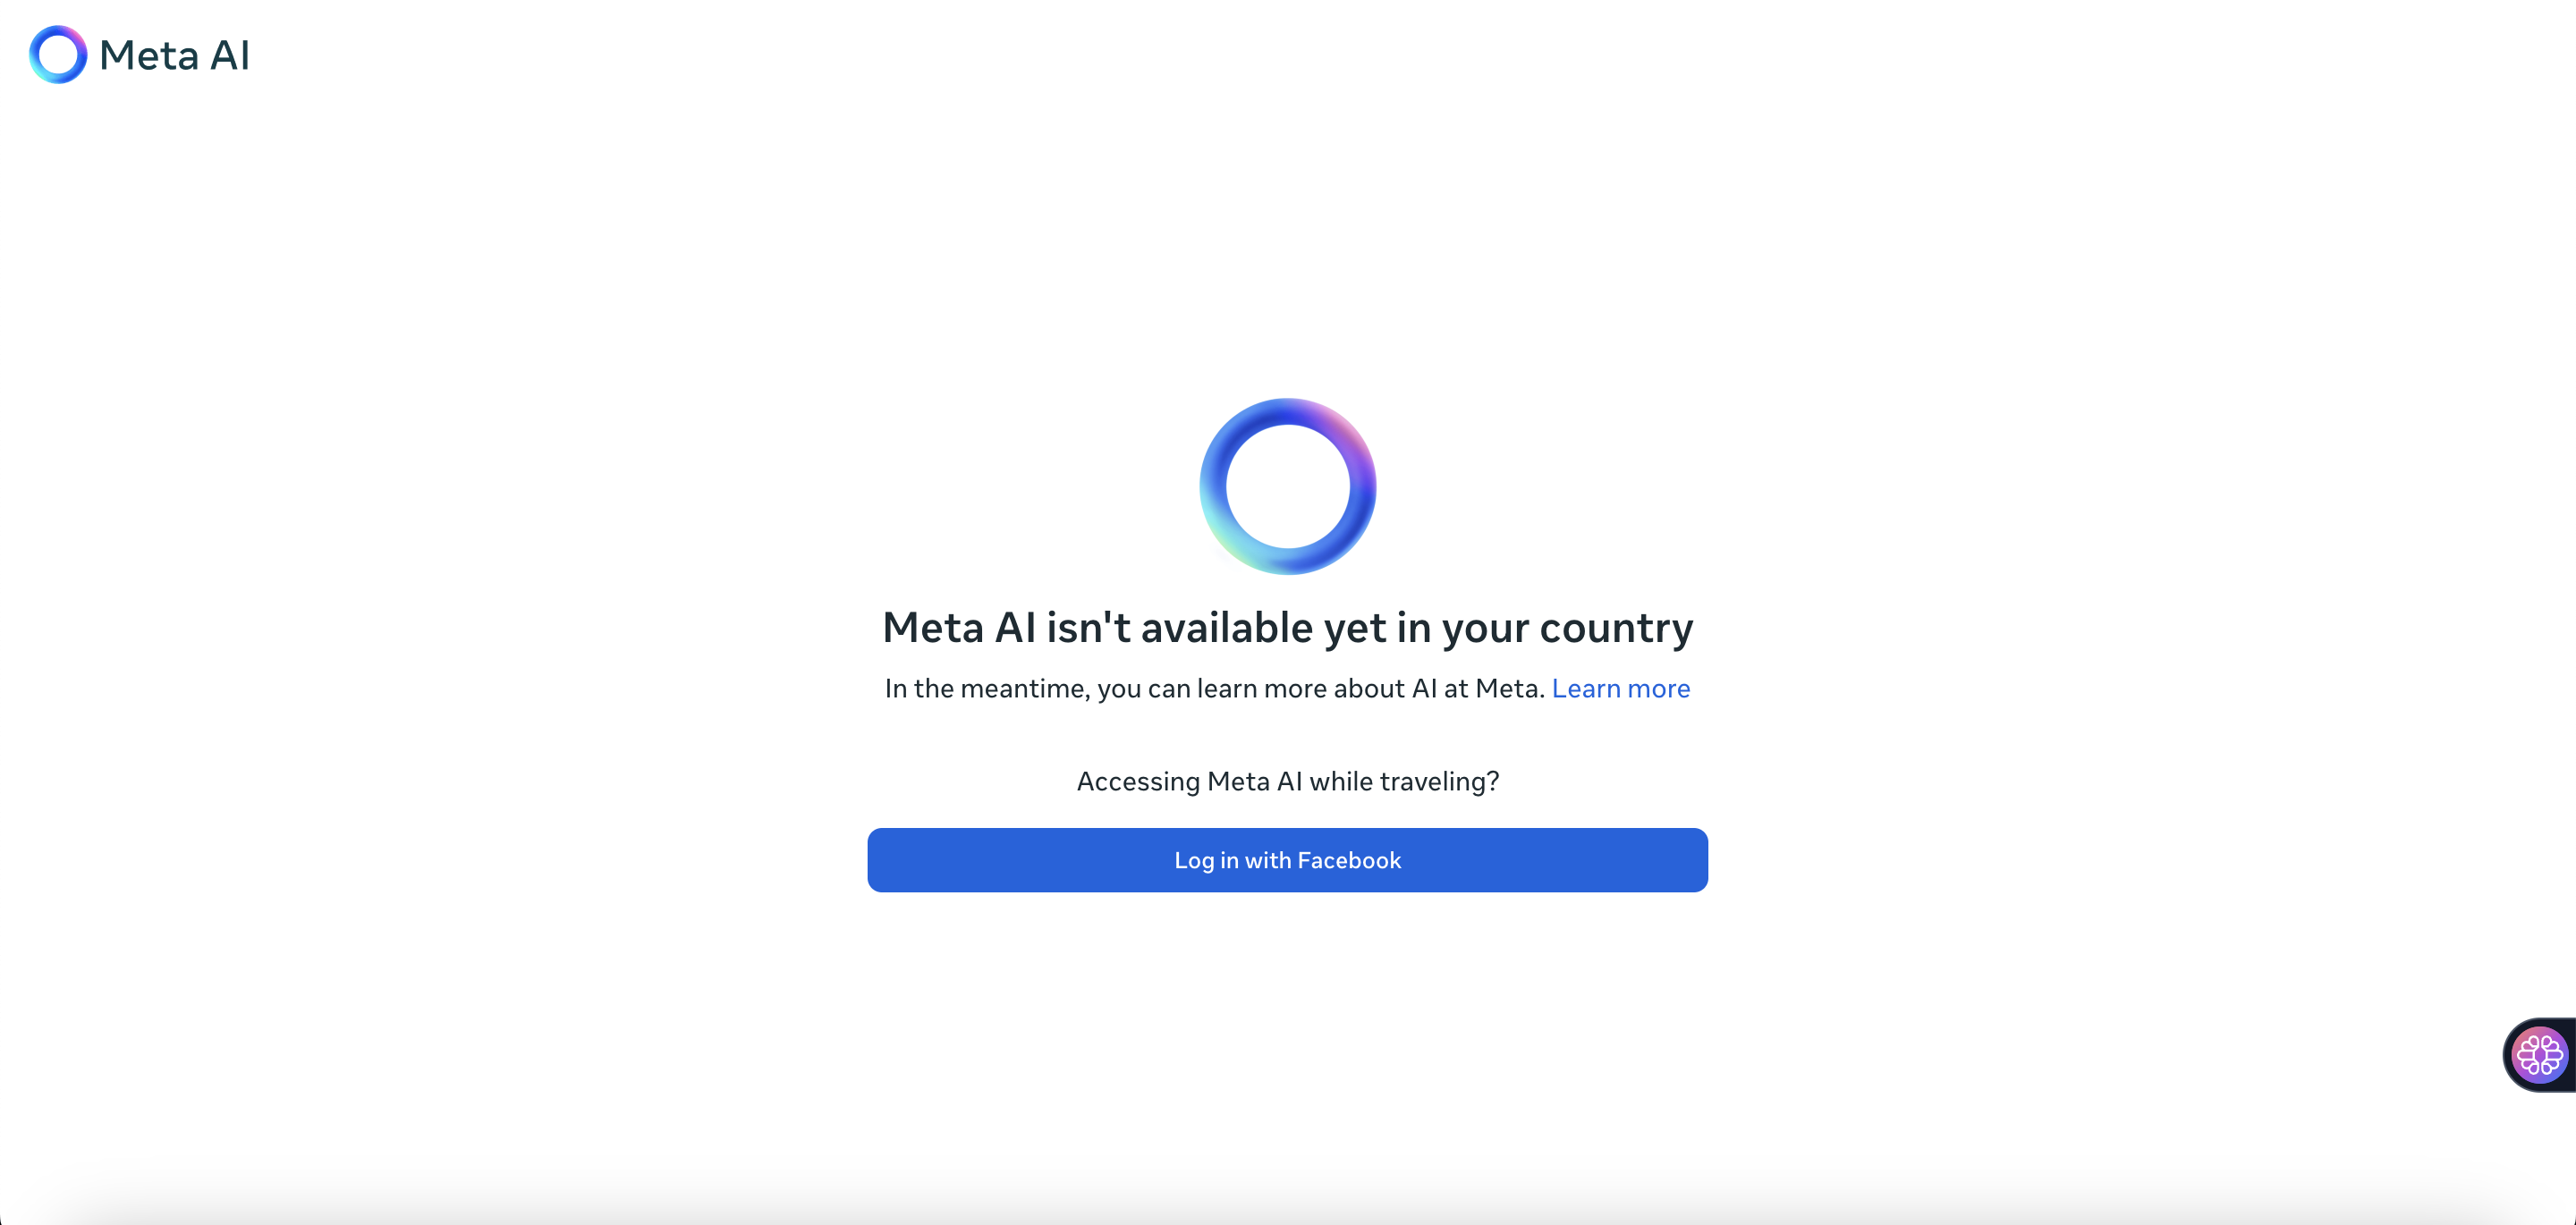 Meta AI ist in Ihrem Land noch nicht verfügbar